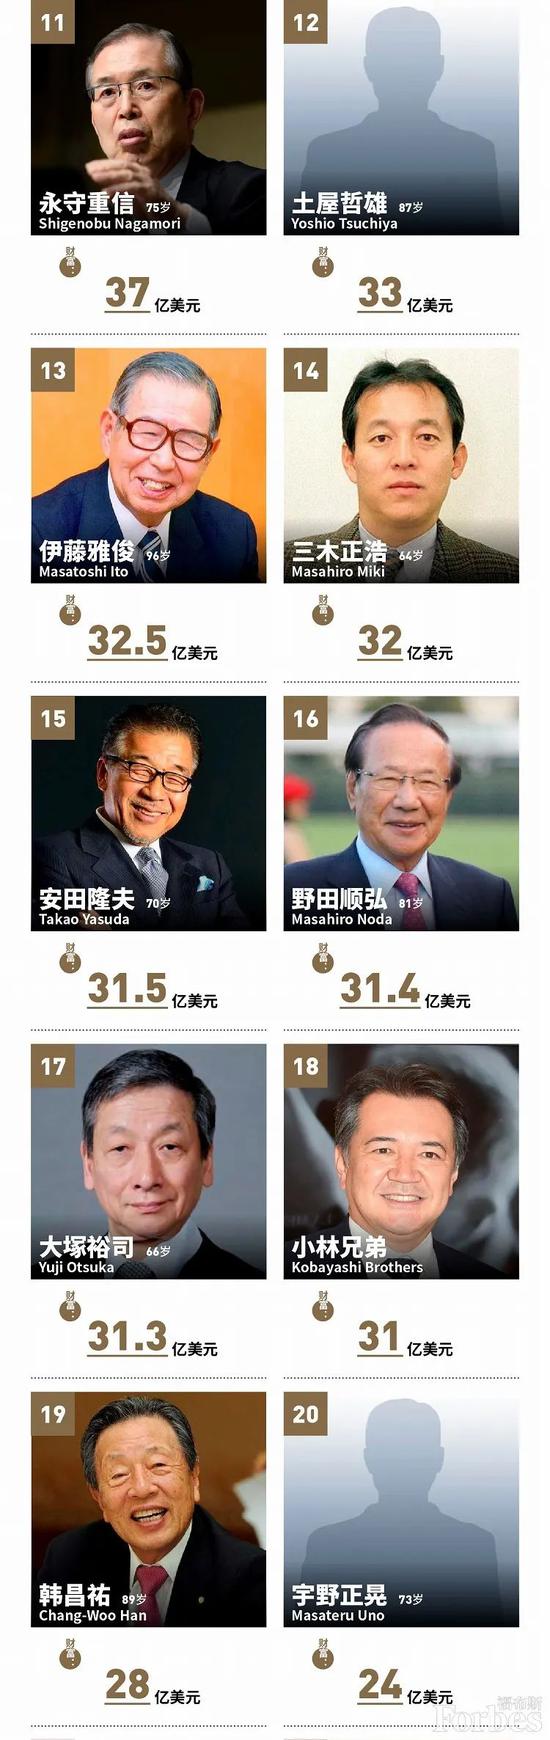 日本首富排行榜2020_日本2020富豪榜新鲜出炉啦,马云爸爸的好朋友孙正义